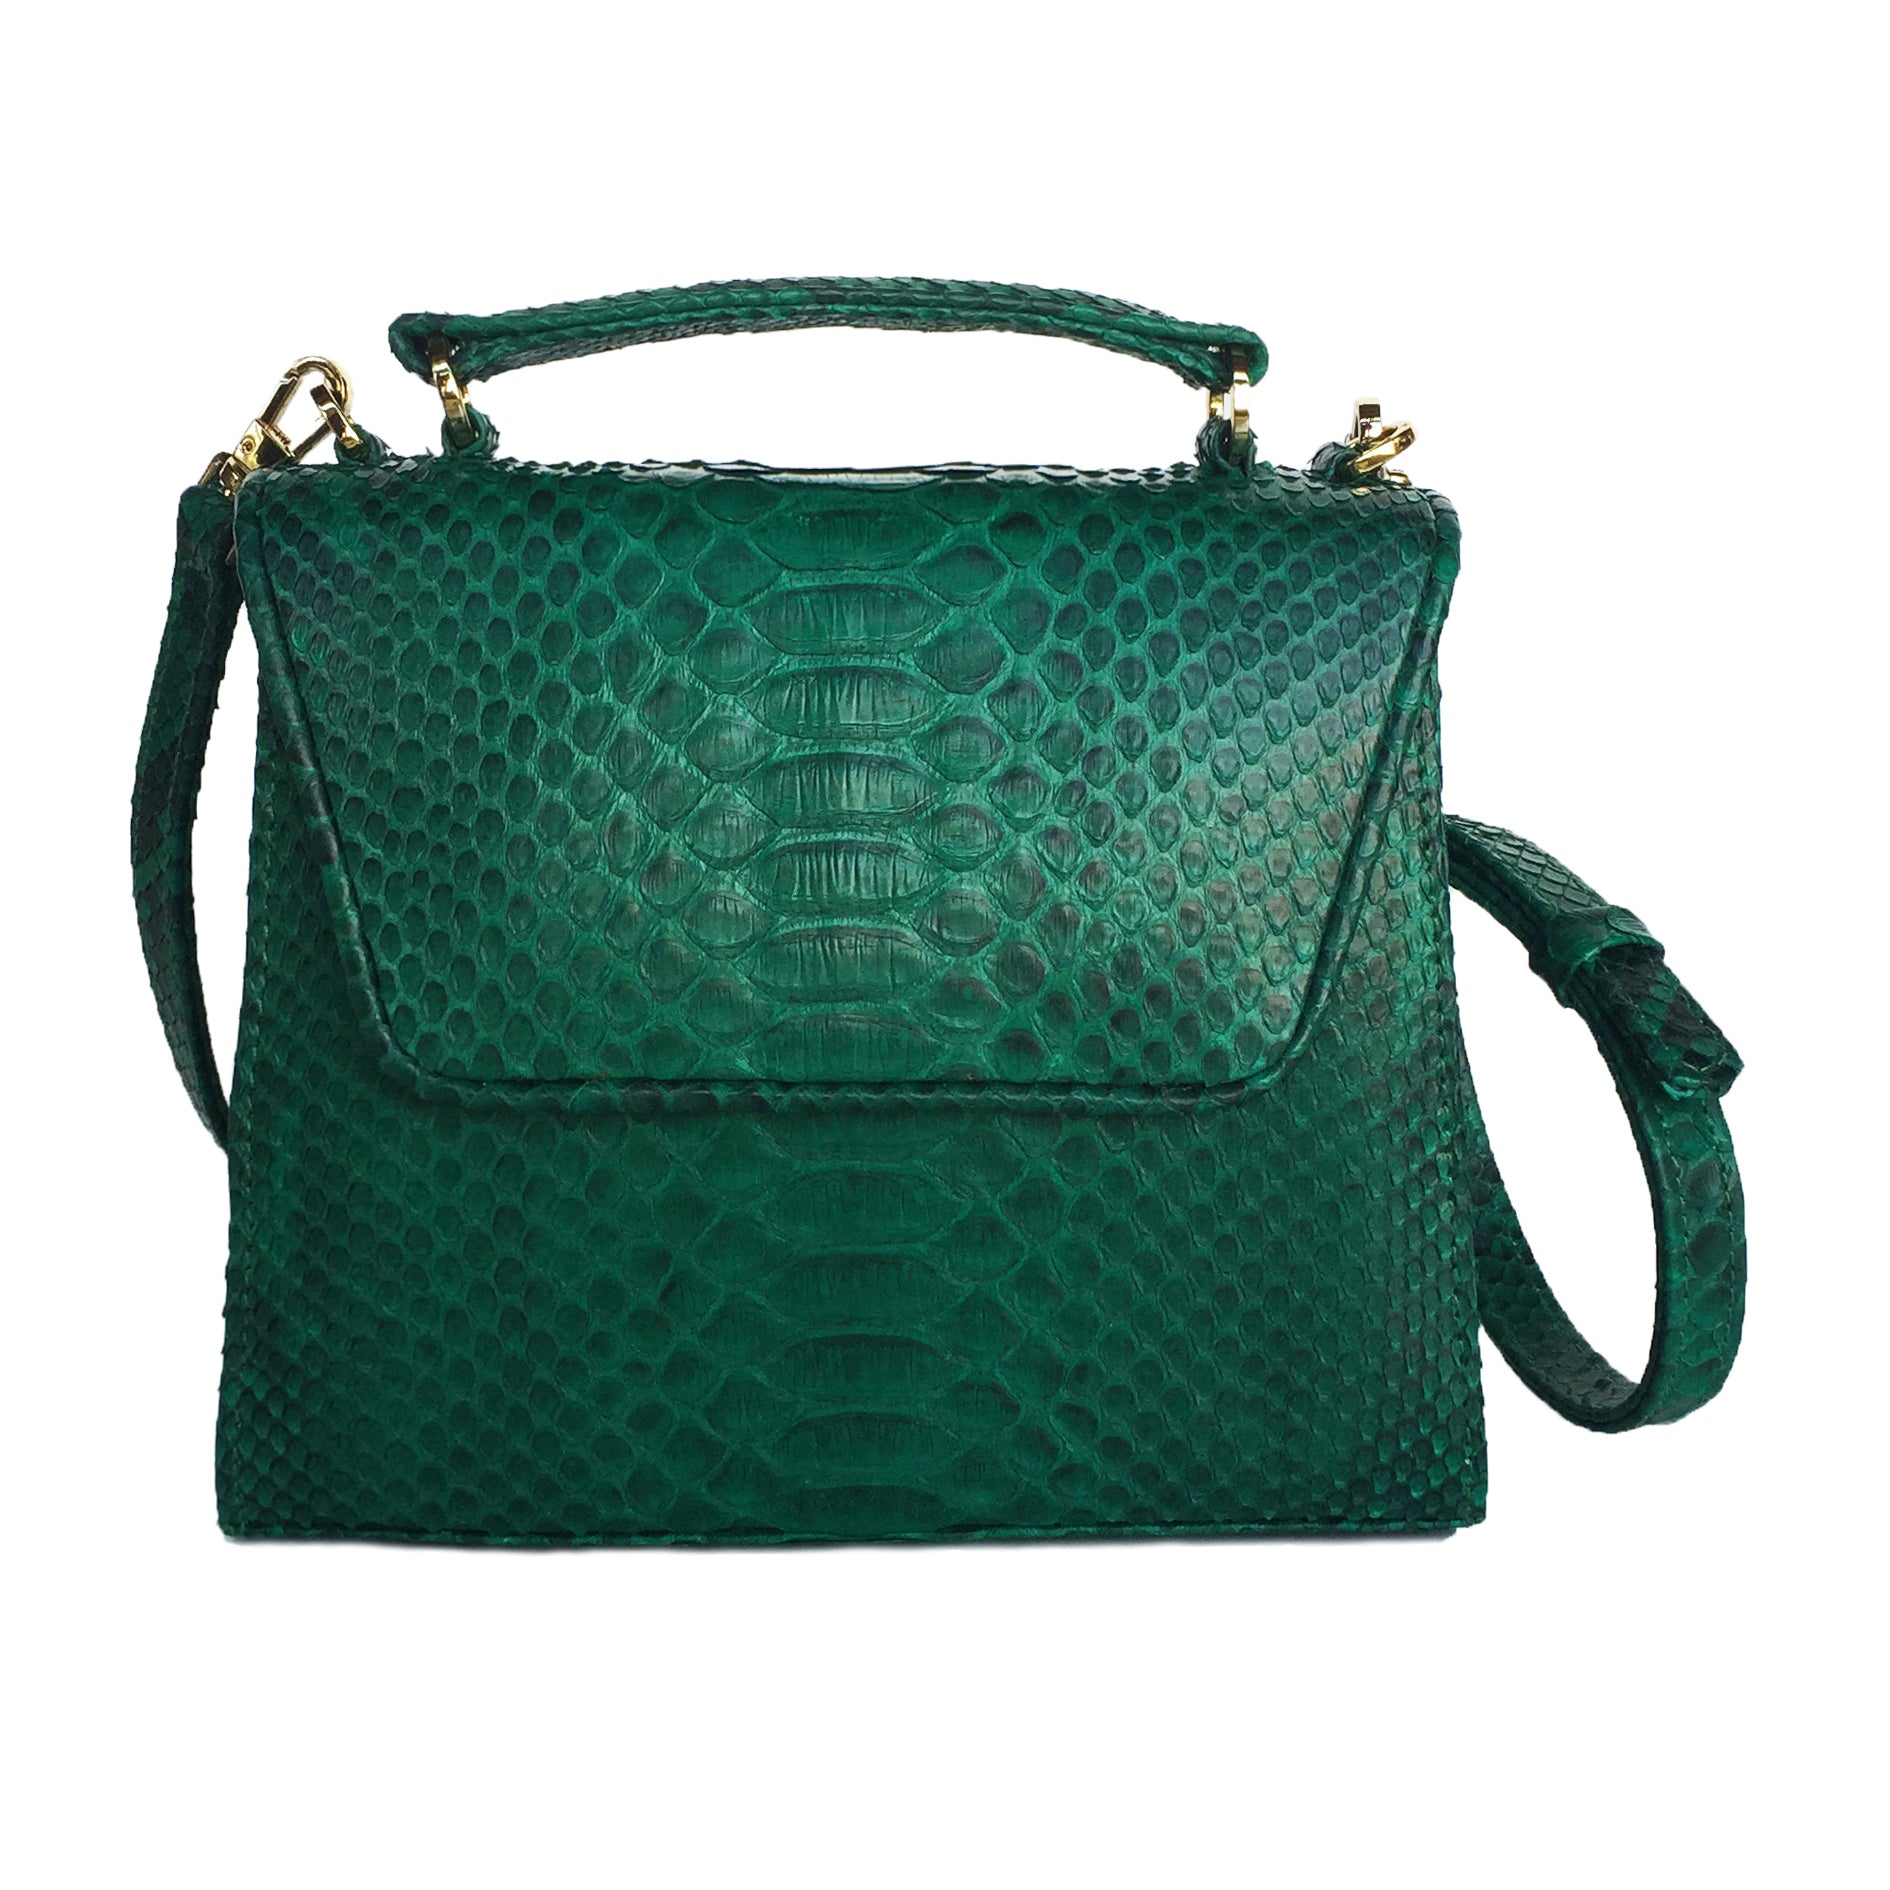 SUE (Mini) Emerald Python Tote and Cross Body Bag